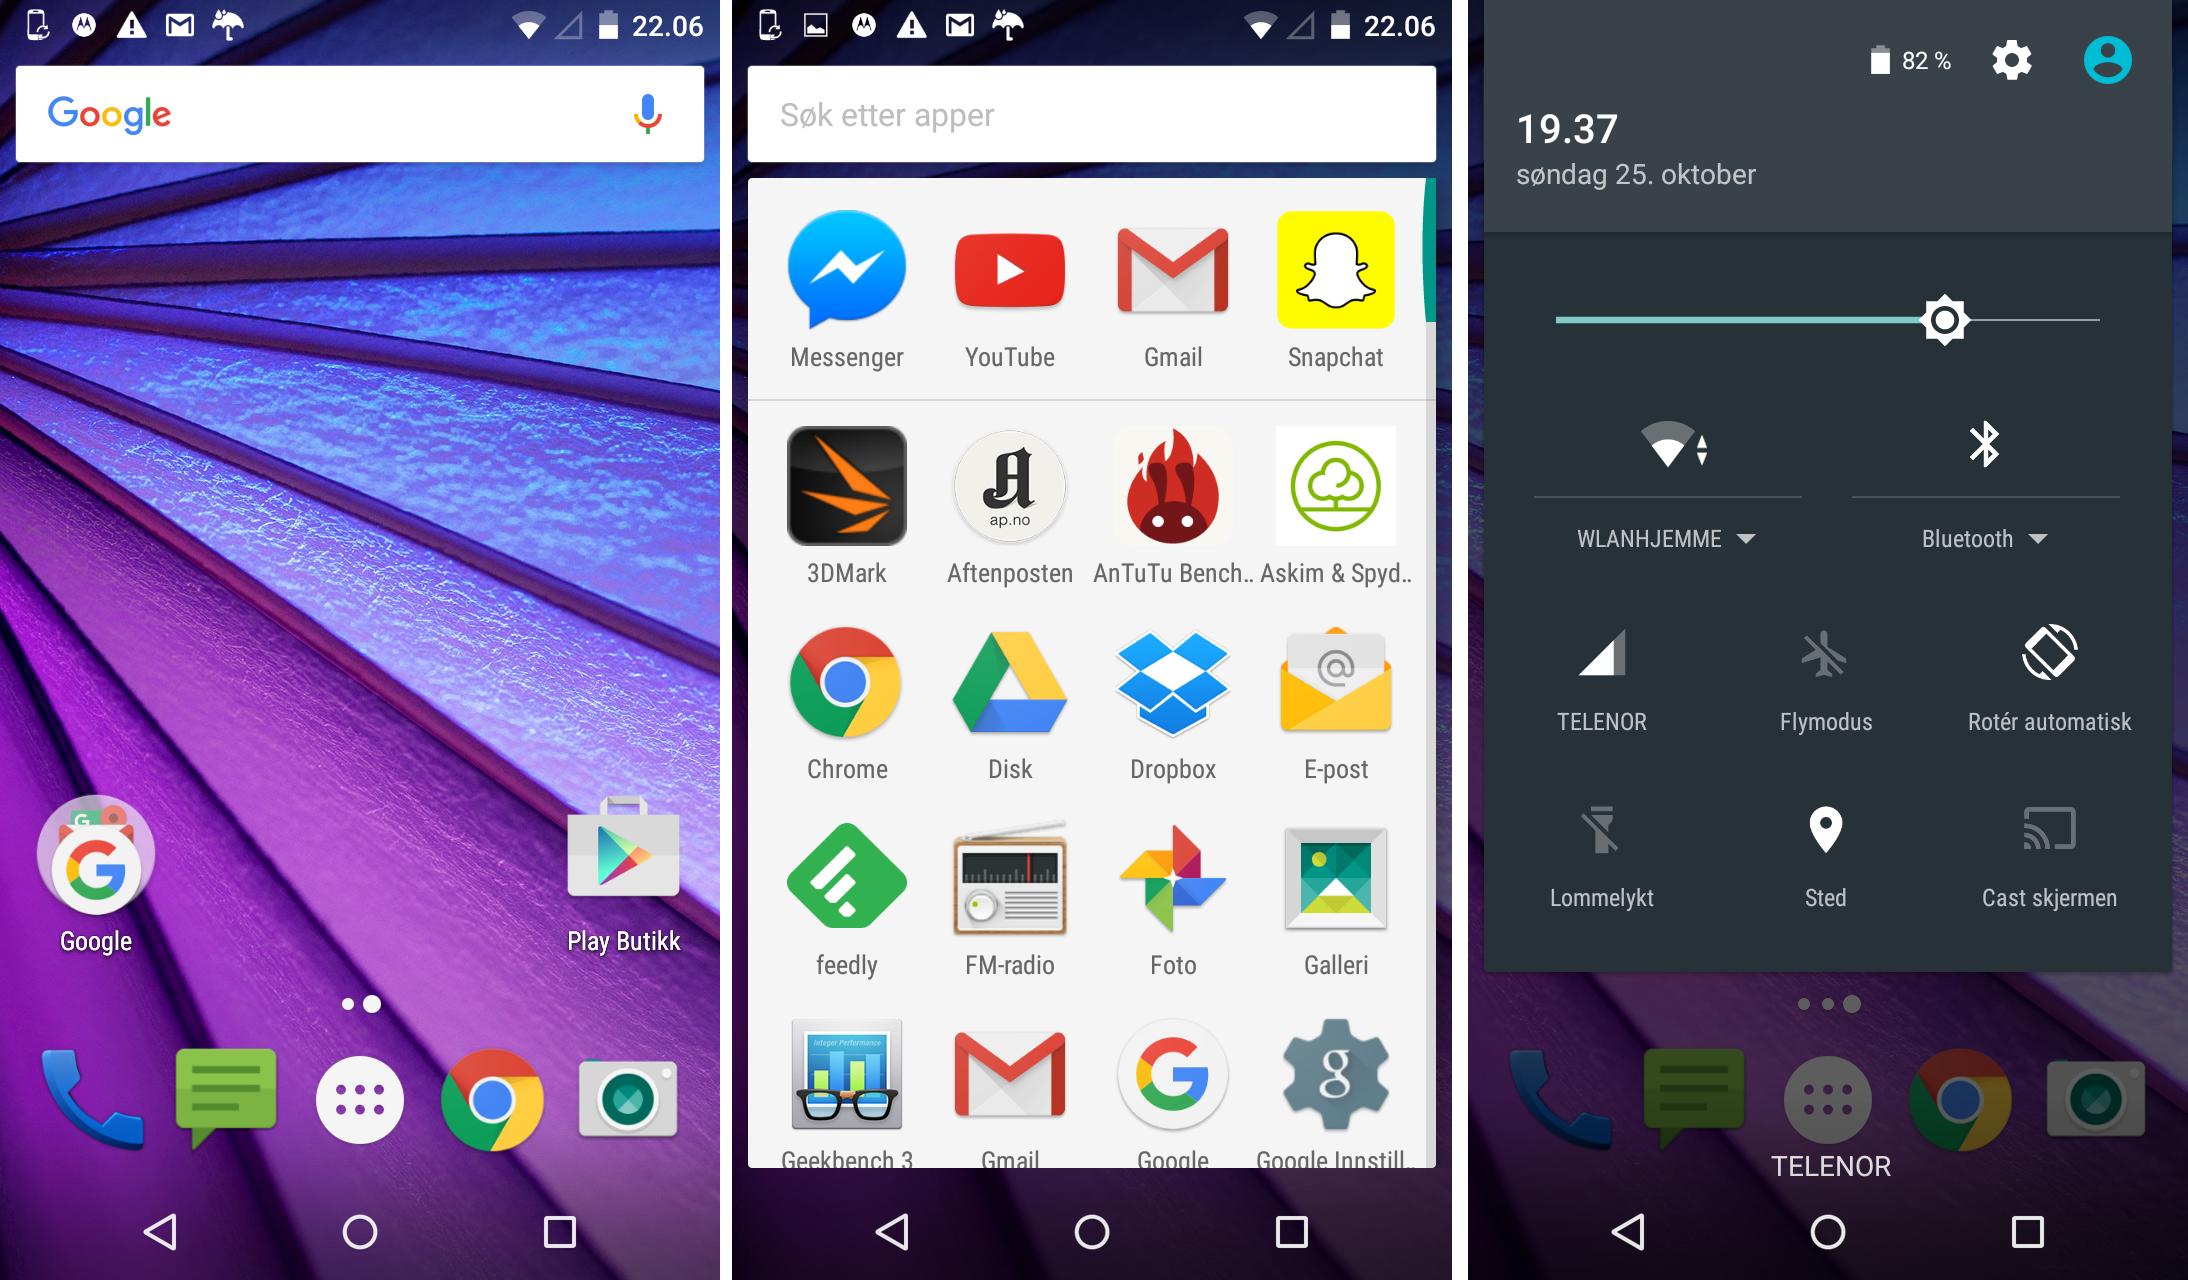 Moto G kjører ganske standard Android 5.1-grensesnitt. App-menyen viser alle appene i alfabetisk rekkefølge, med de fire mest brukte appene øverst.